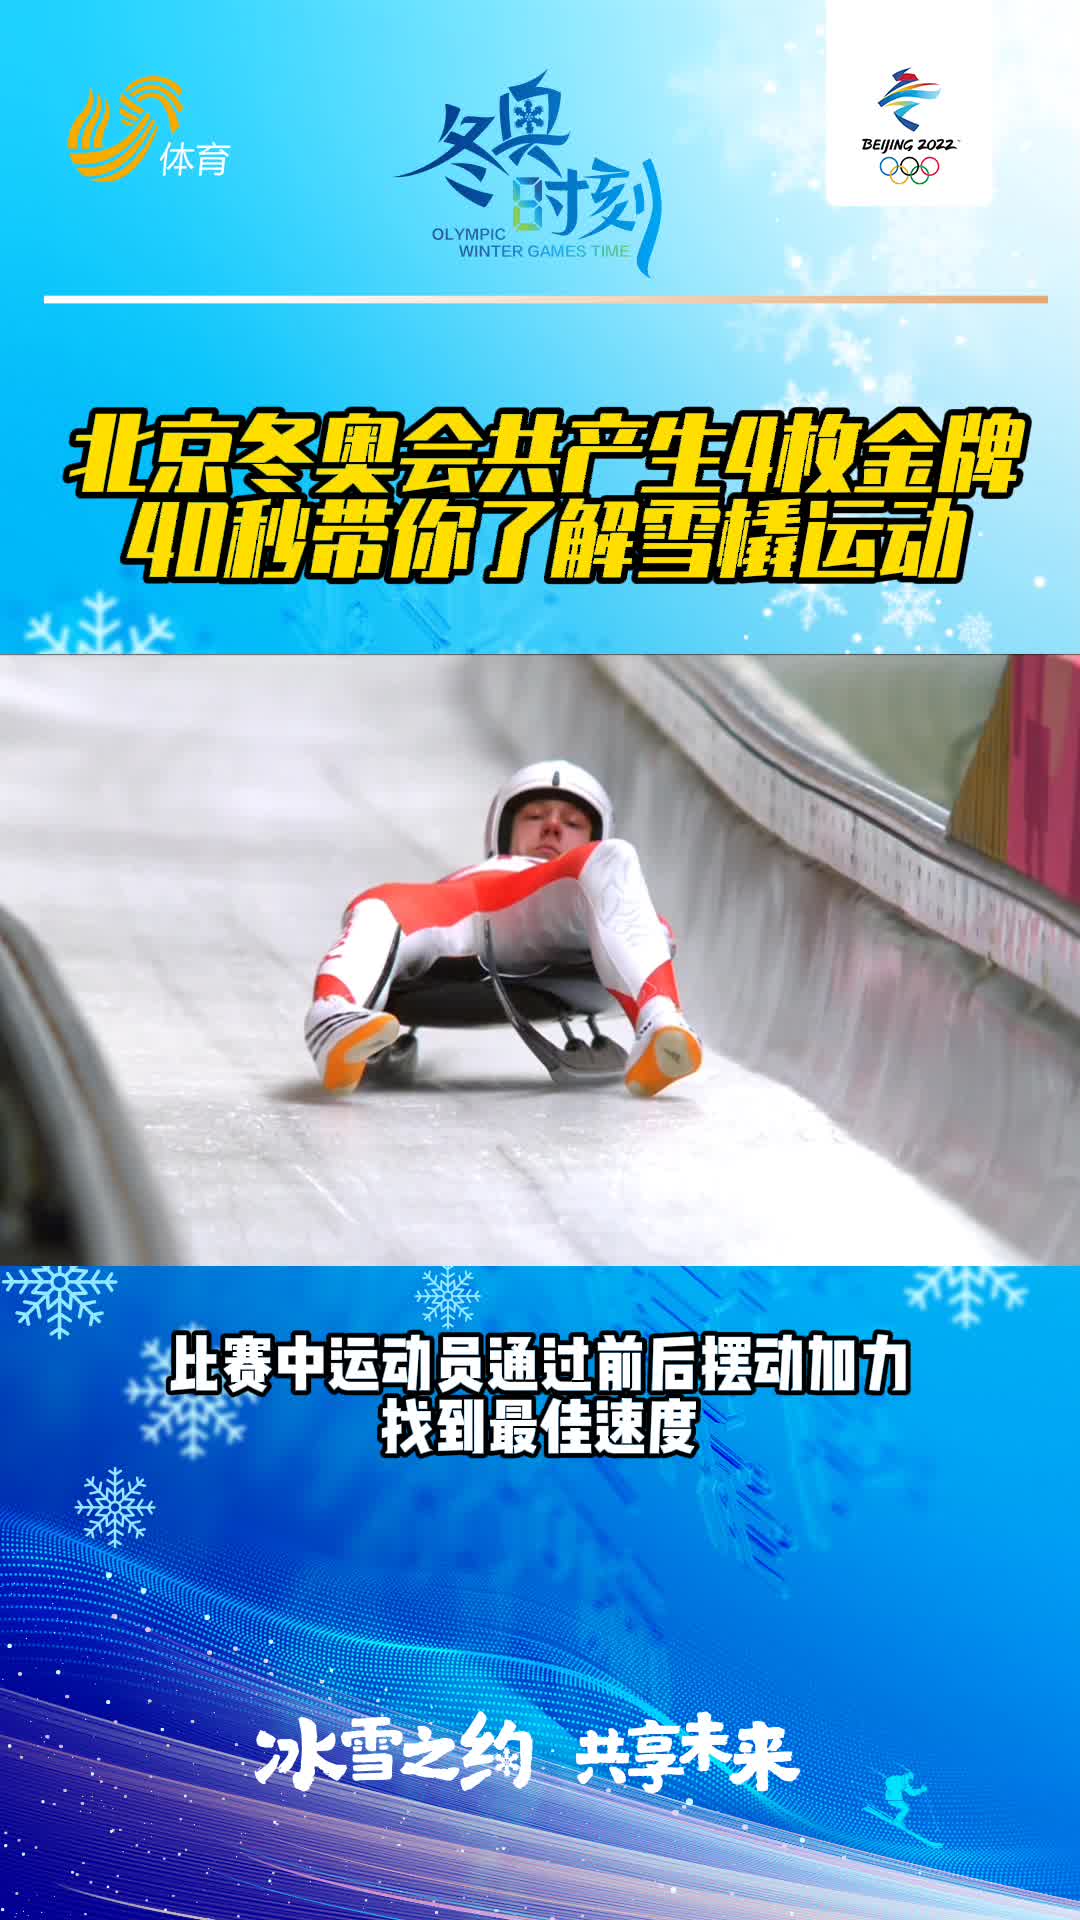 冬奥时刻丨北京冬奥会共产生4枚金牌，40秒带你了解雪橇运动